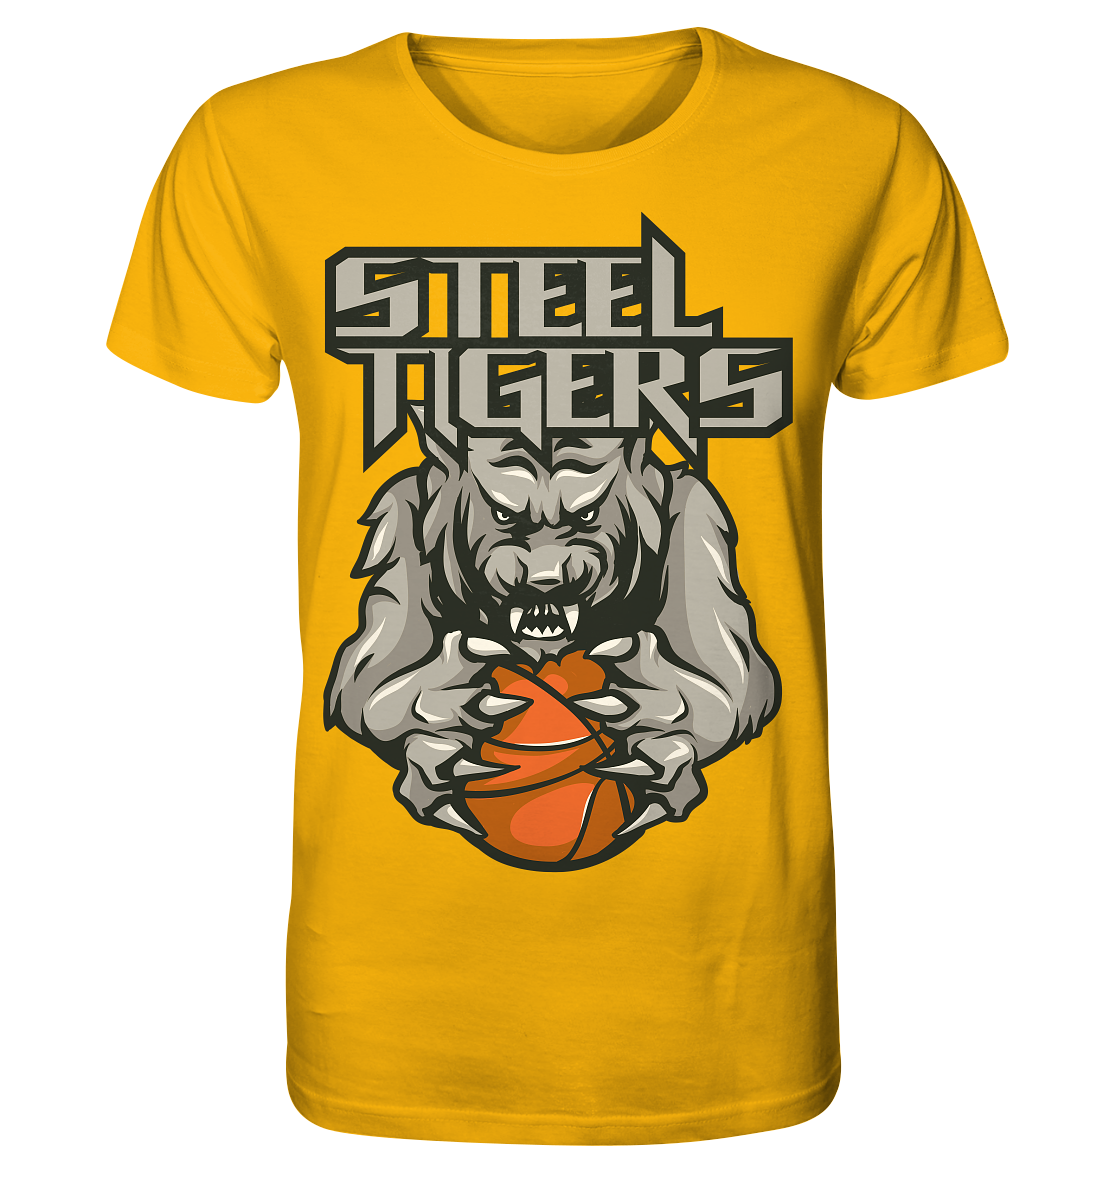 Steel Tigers - Organic Shirt